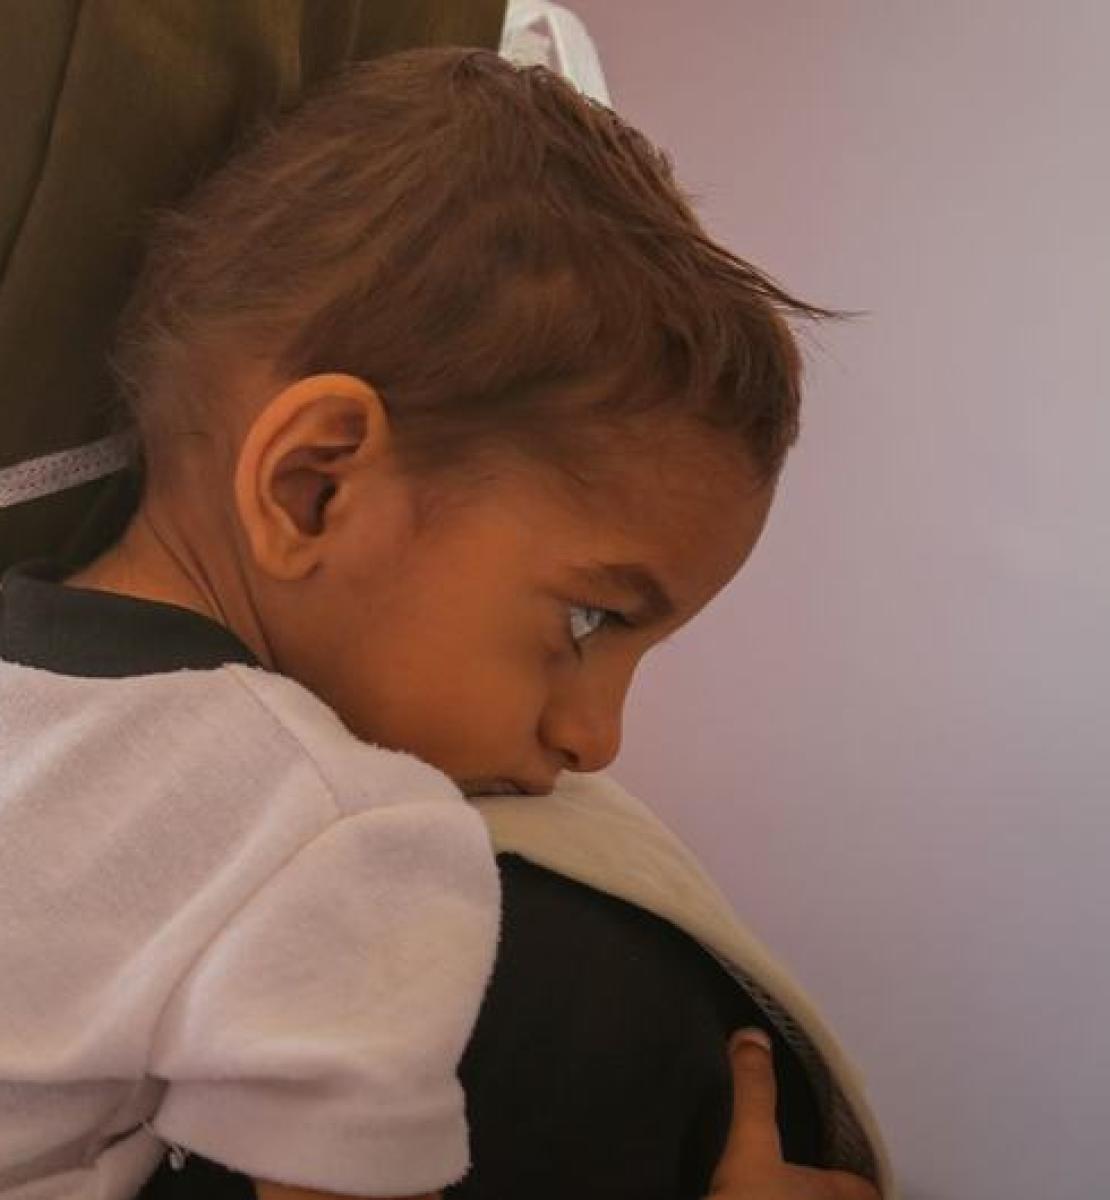 طفل يتلقى العلاج من سوء التغذية في أحد مستشفيات صنعاء، اليمن. 